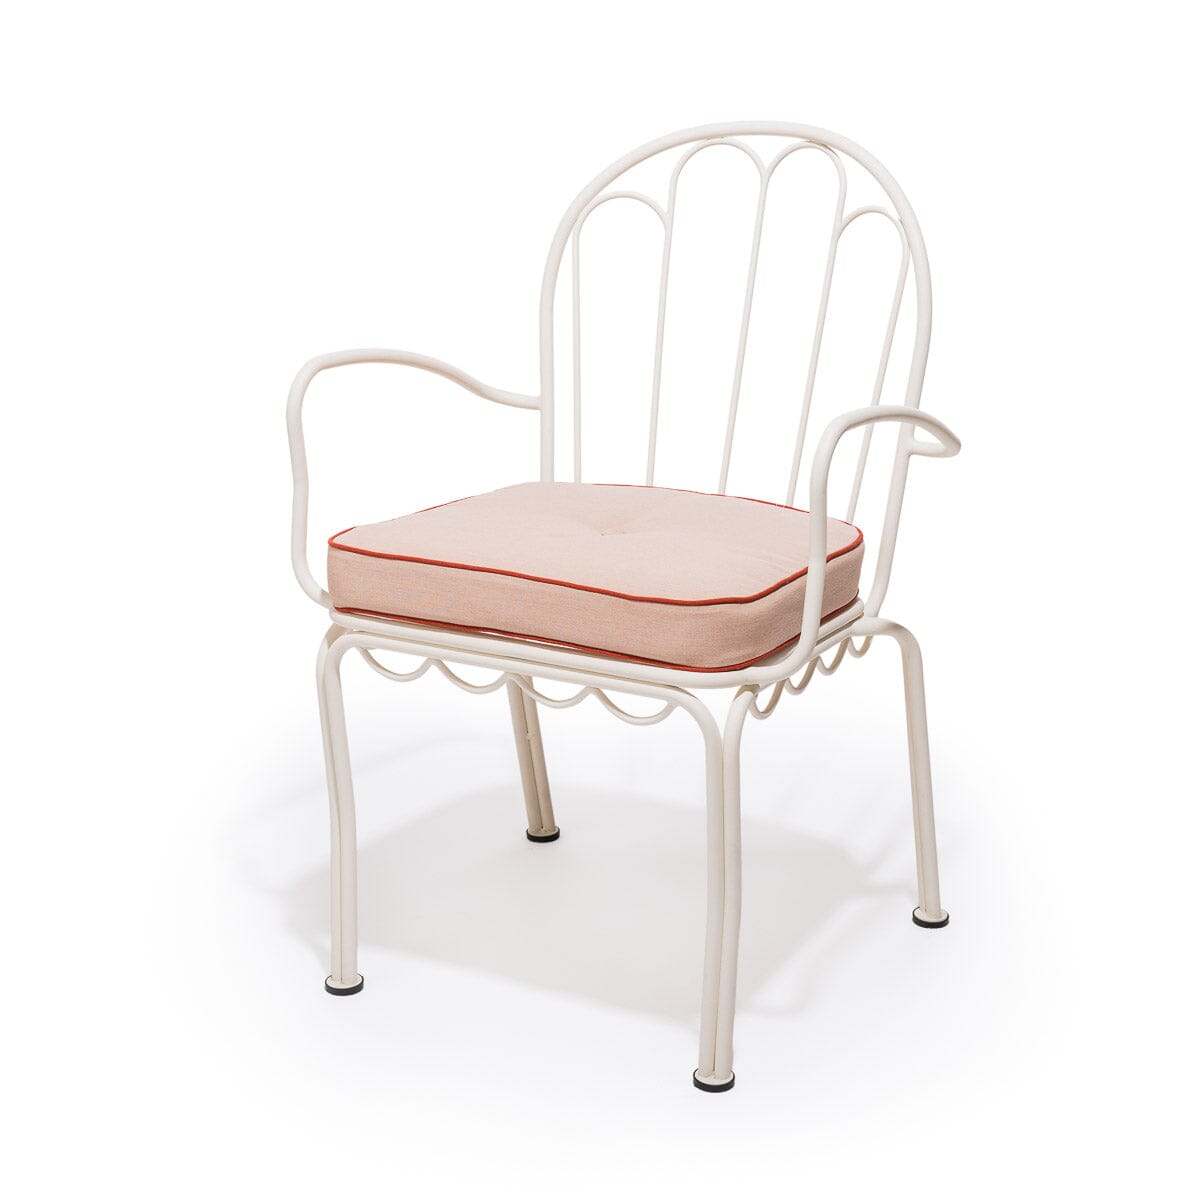 The Al Fresco Chair Cushion - Rivie Pink Al Fresco Chair Cushion Business & Pleasure Co 